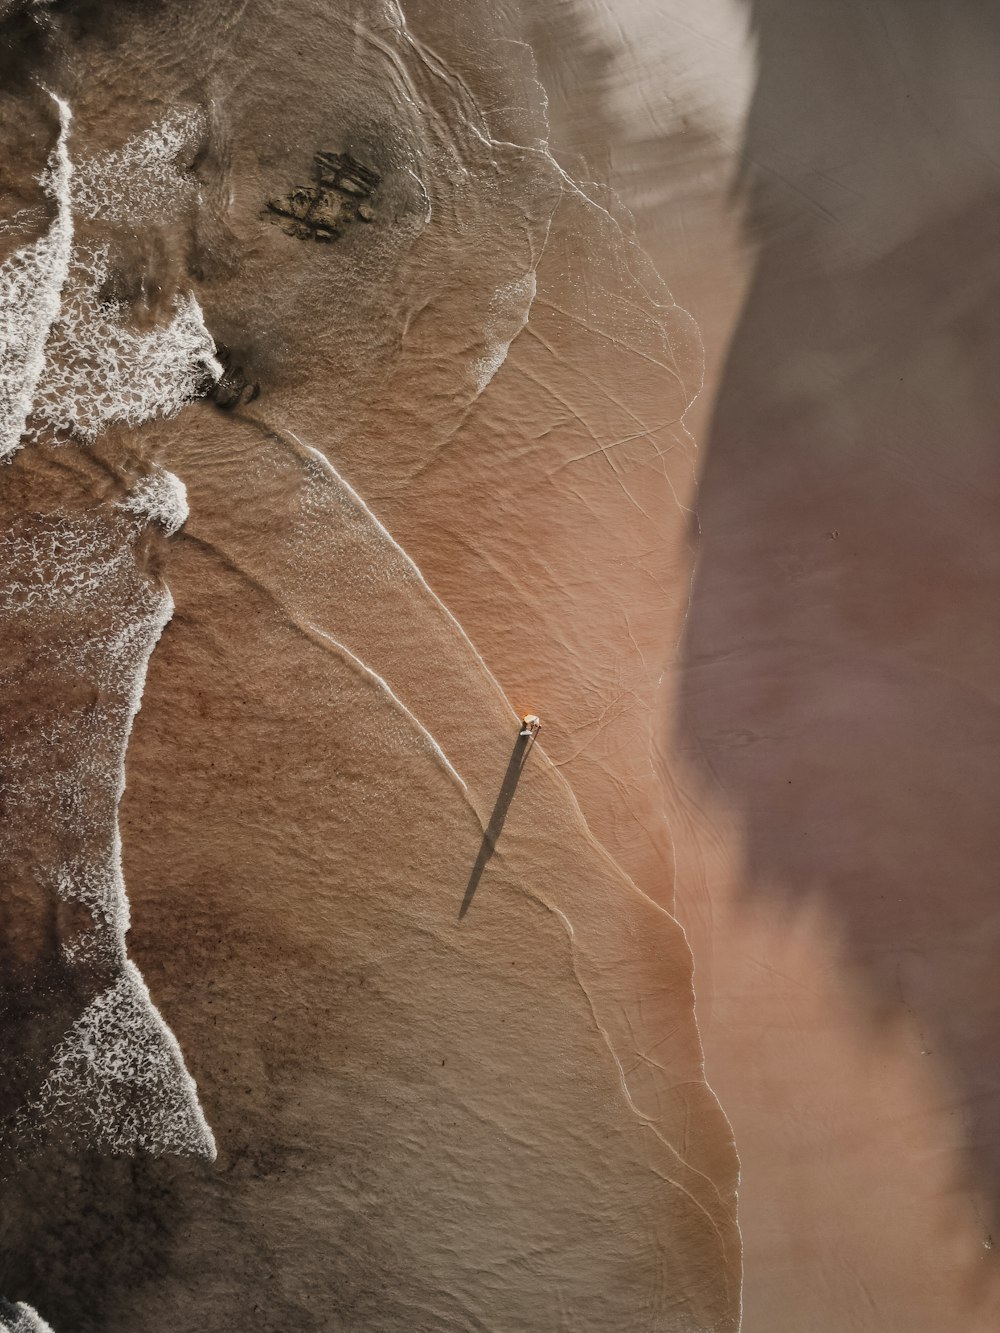 Luftaufnahme einer Felsformation, aus der ein Messer herausragt